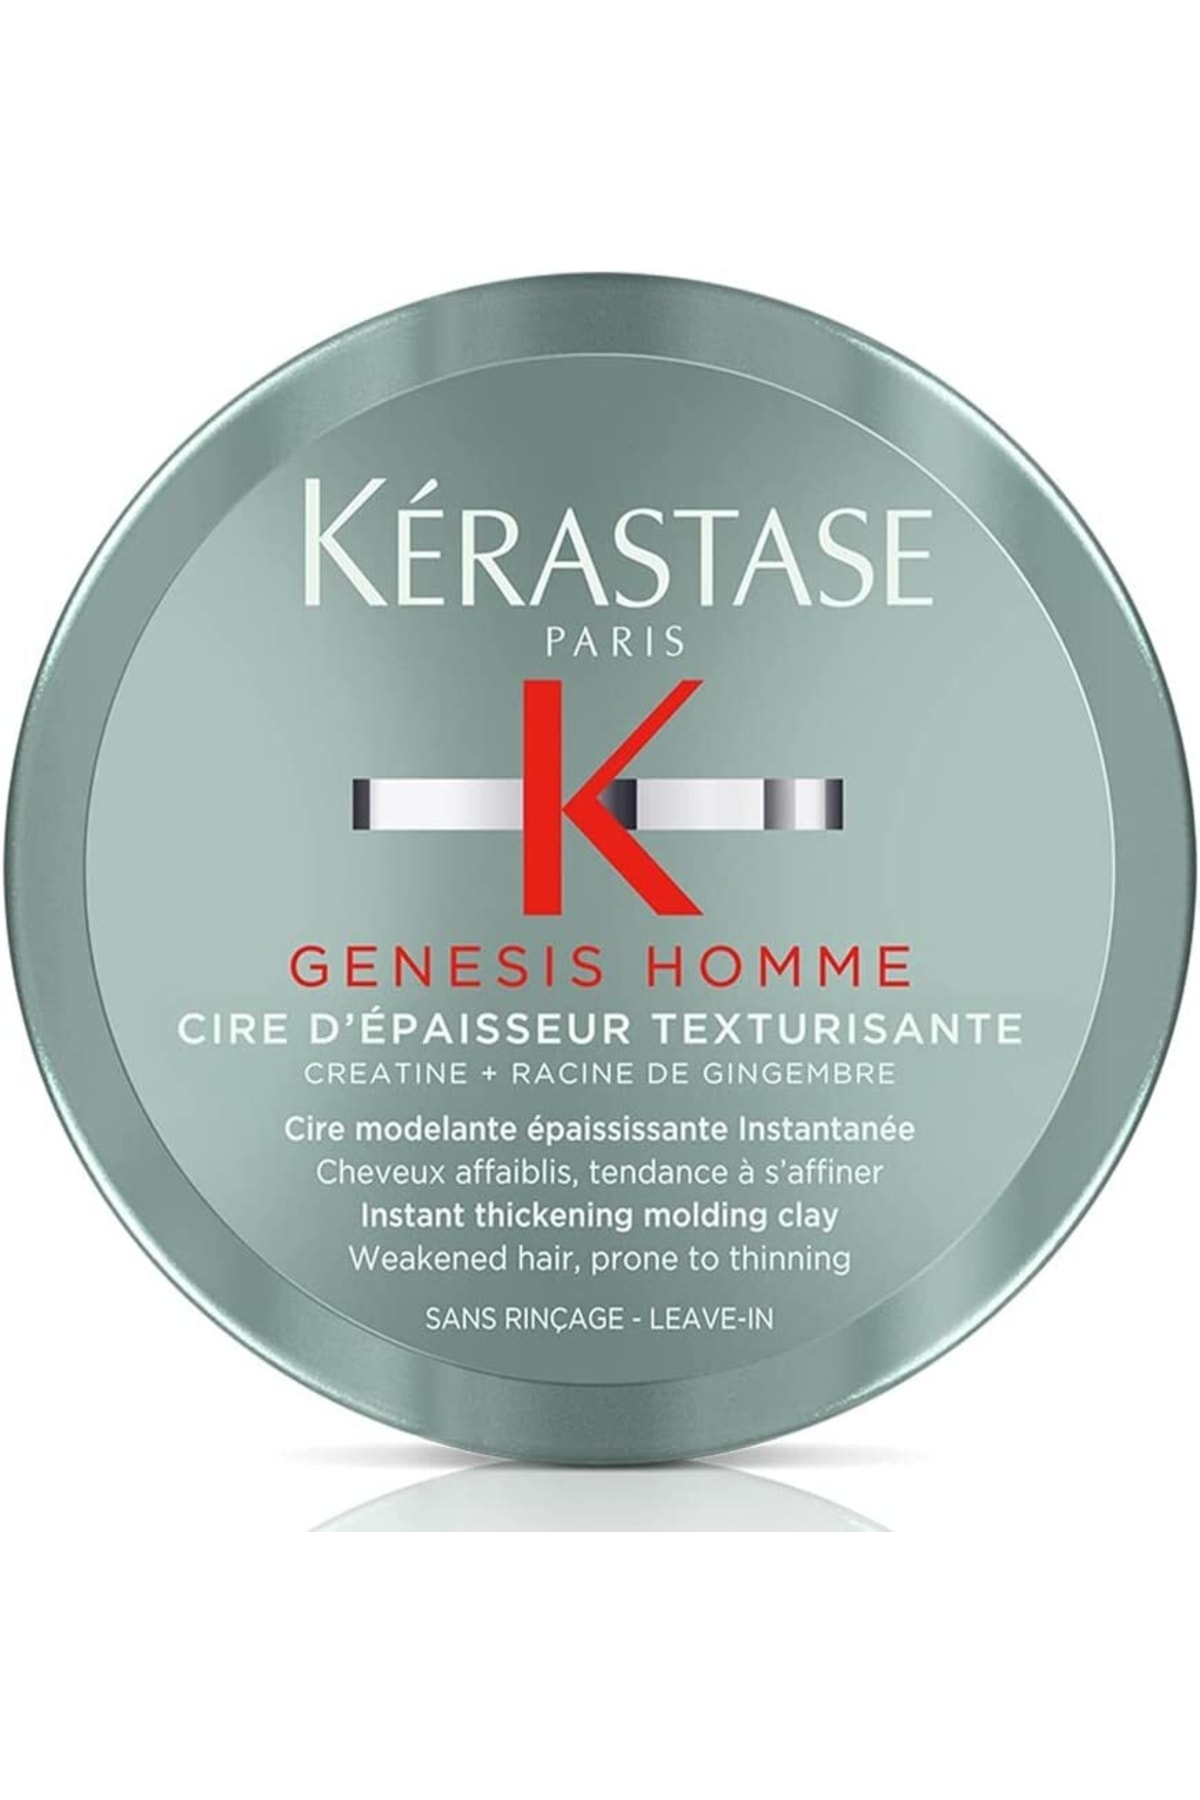 واکس مو حالت دهنده مردانه Genesis Homme Cire Depaisseur Texturisante جنسیس 75میل کراستاس Kerastase